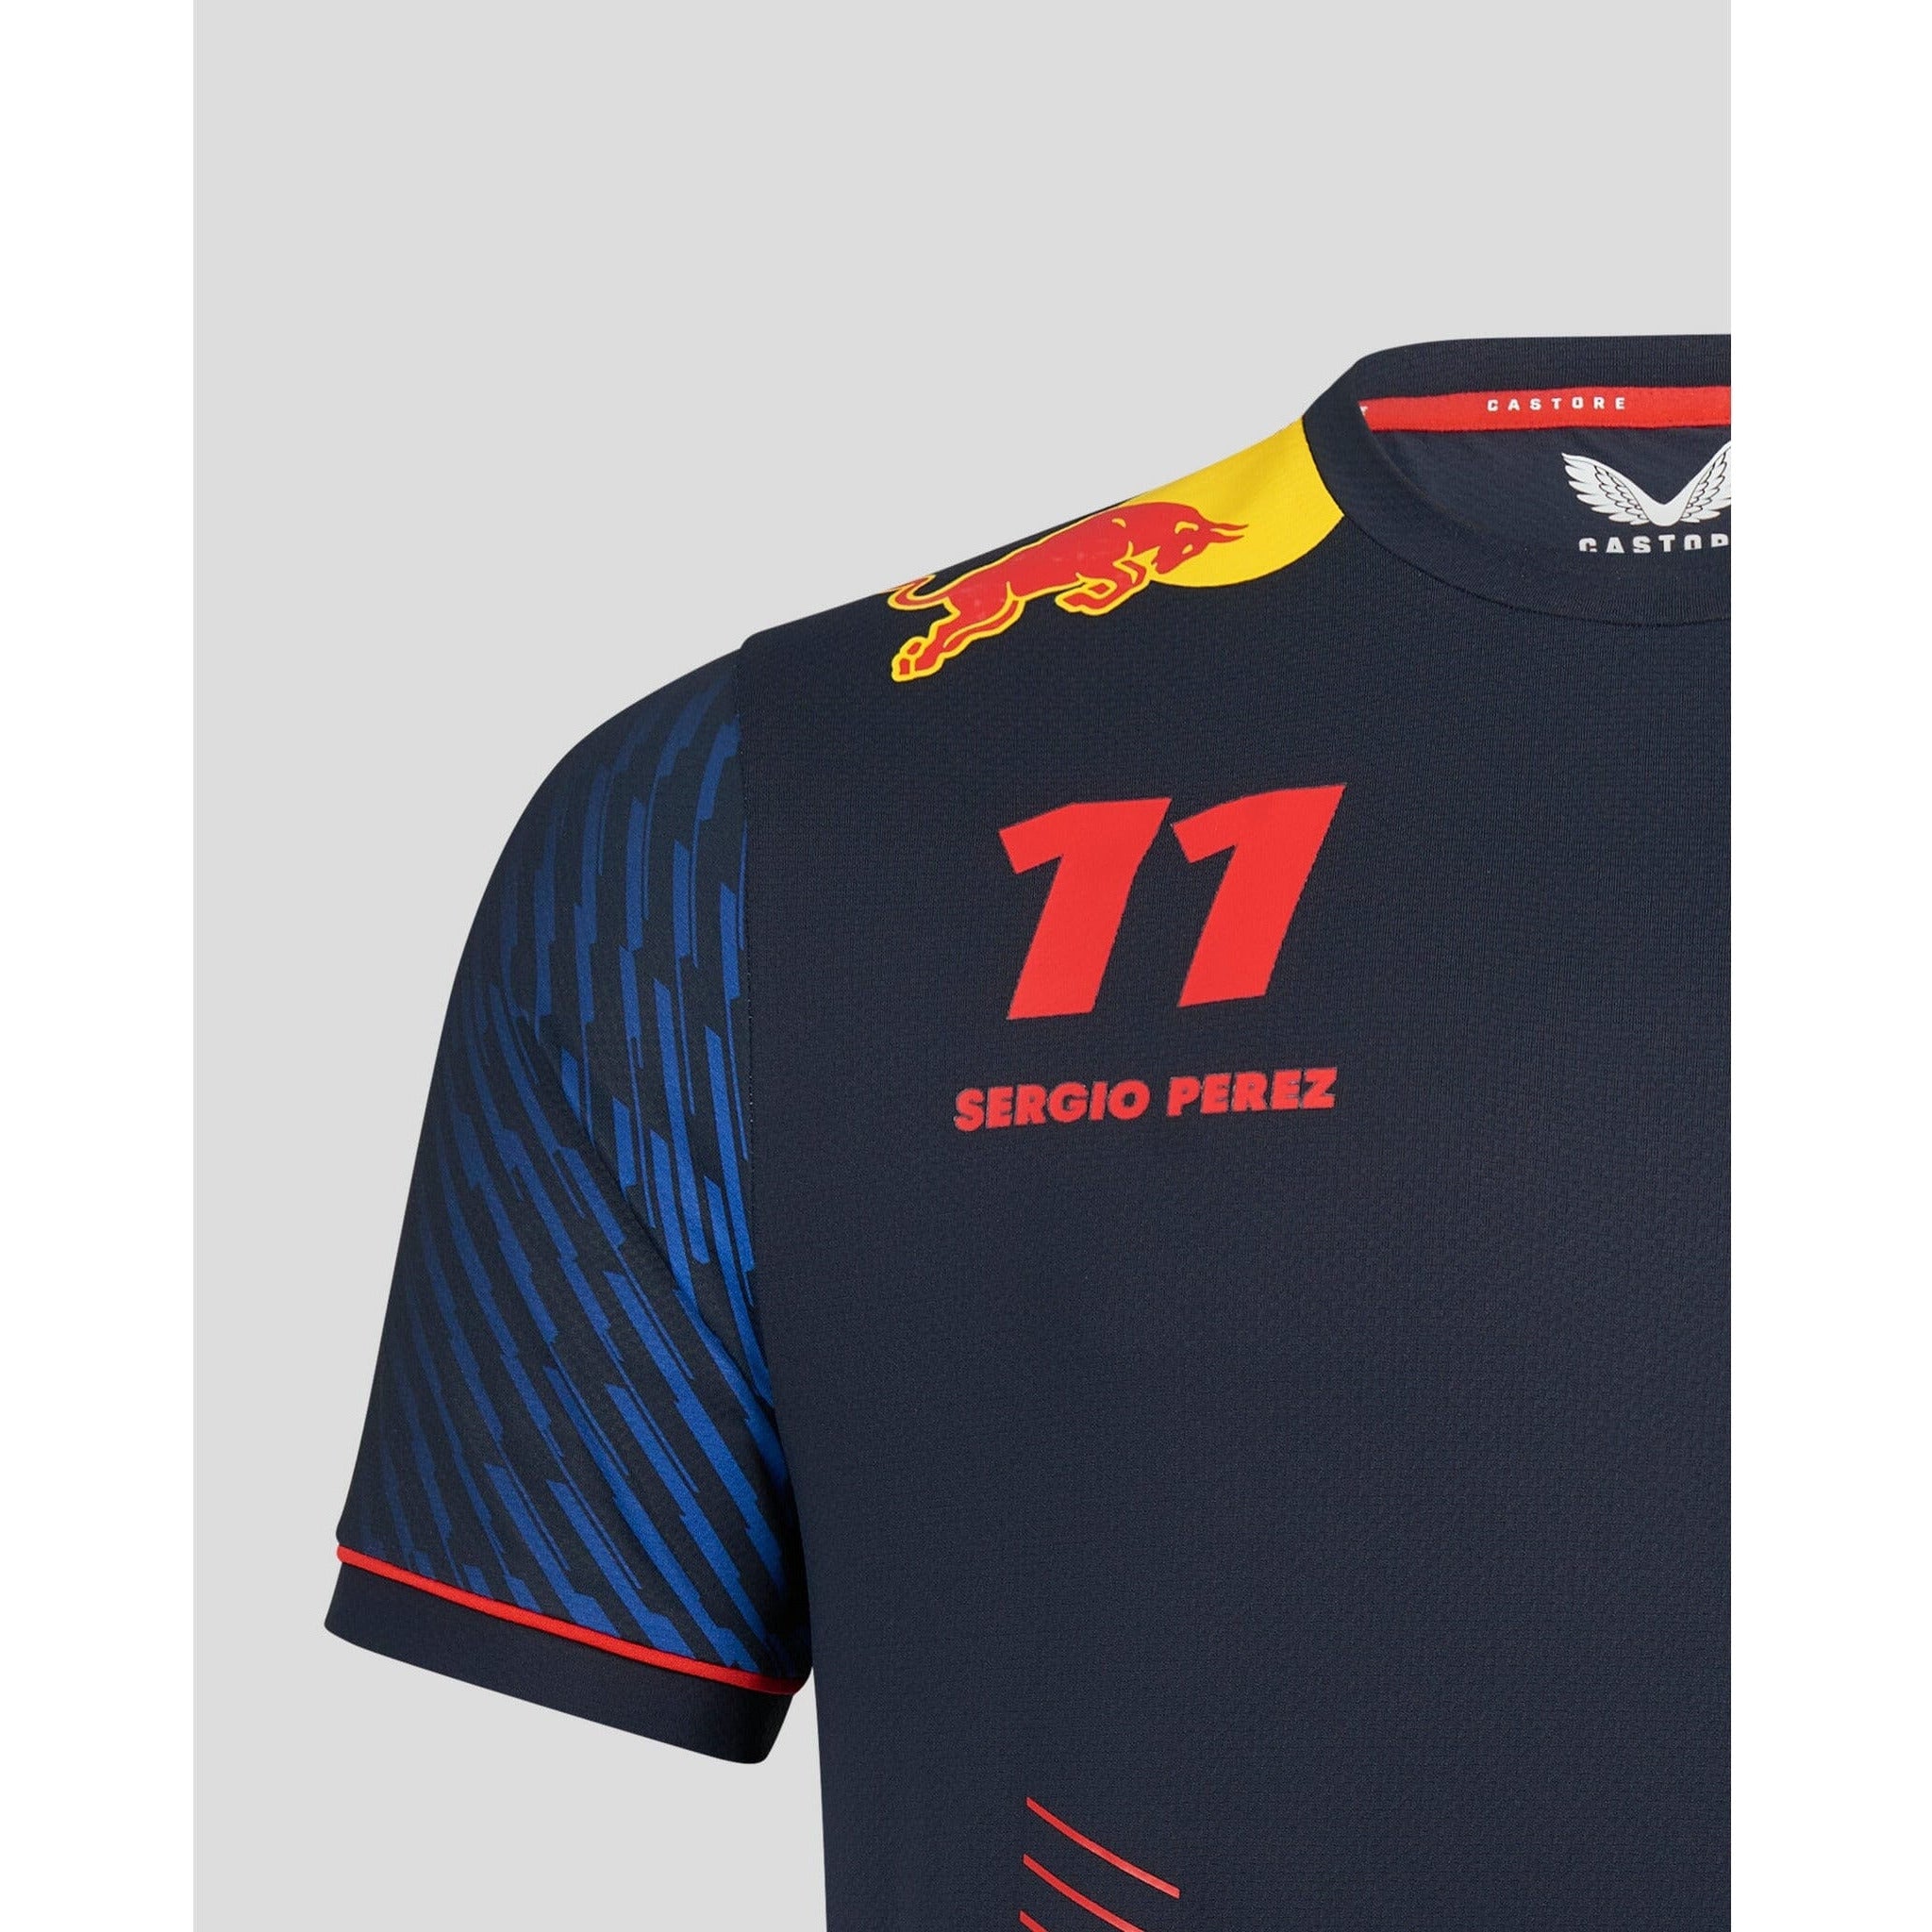 Formula 1 Sergio Checo Perez #11 Shirt – Formula Fans